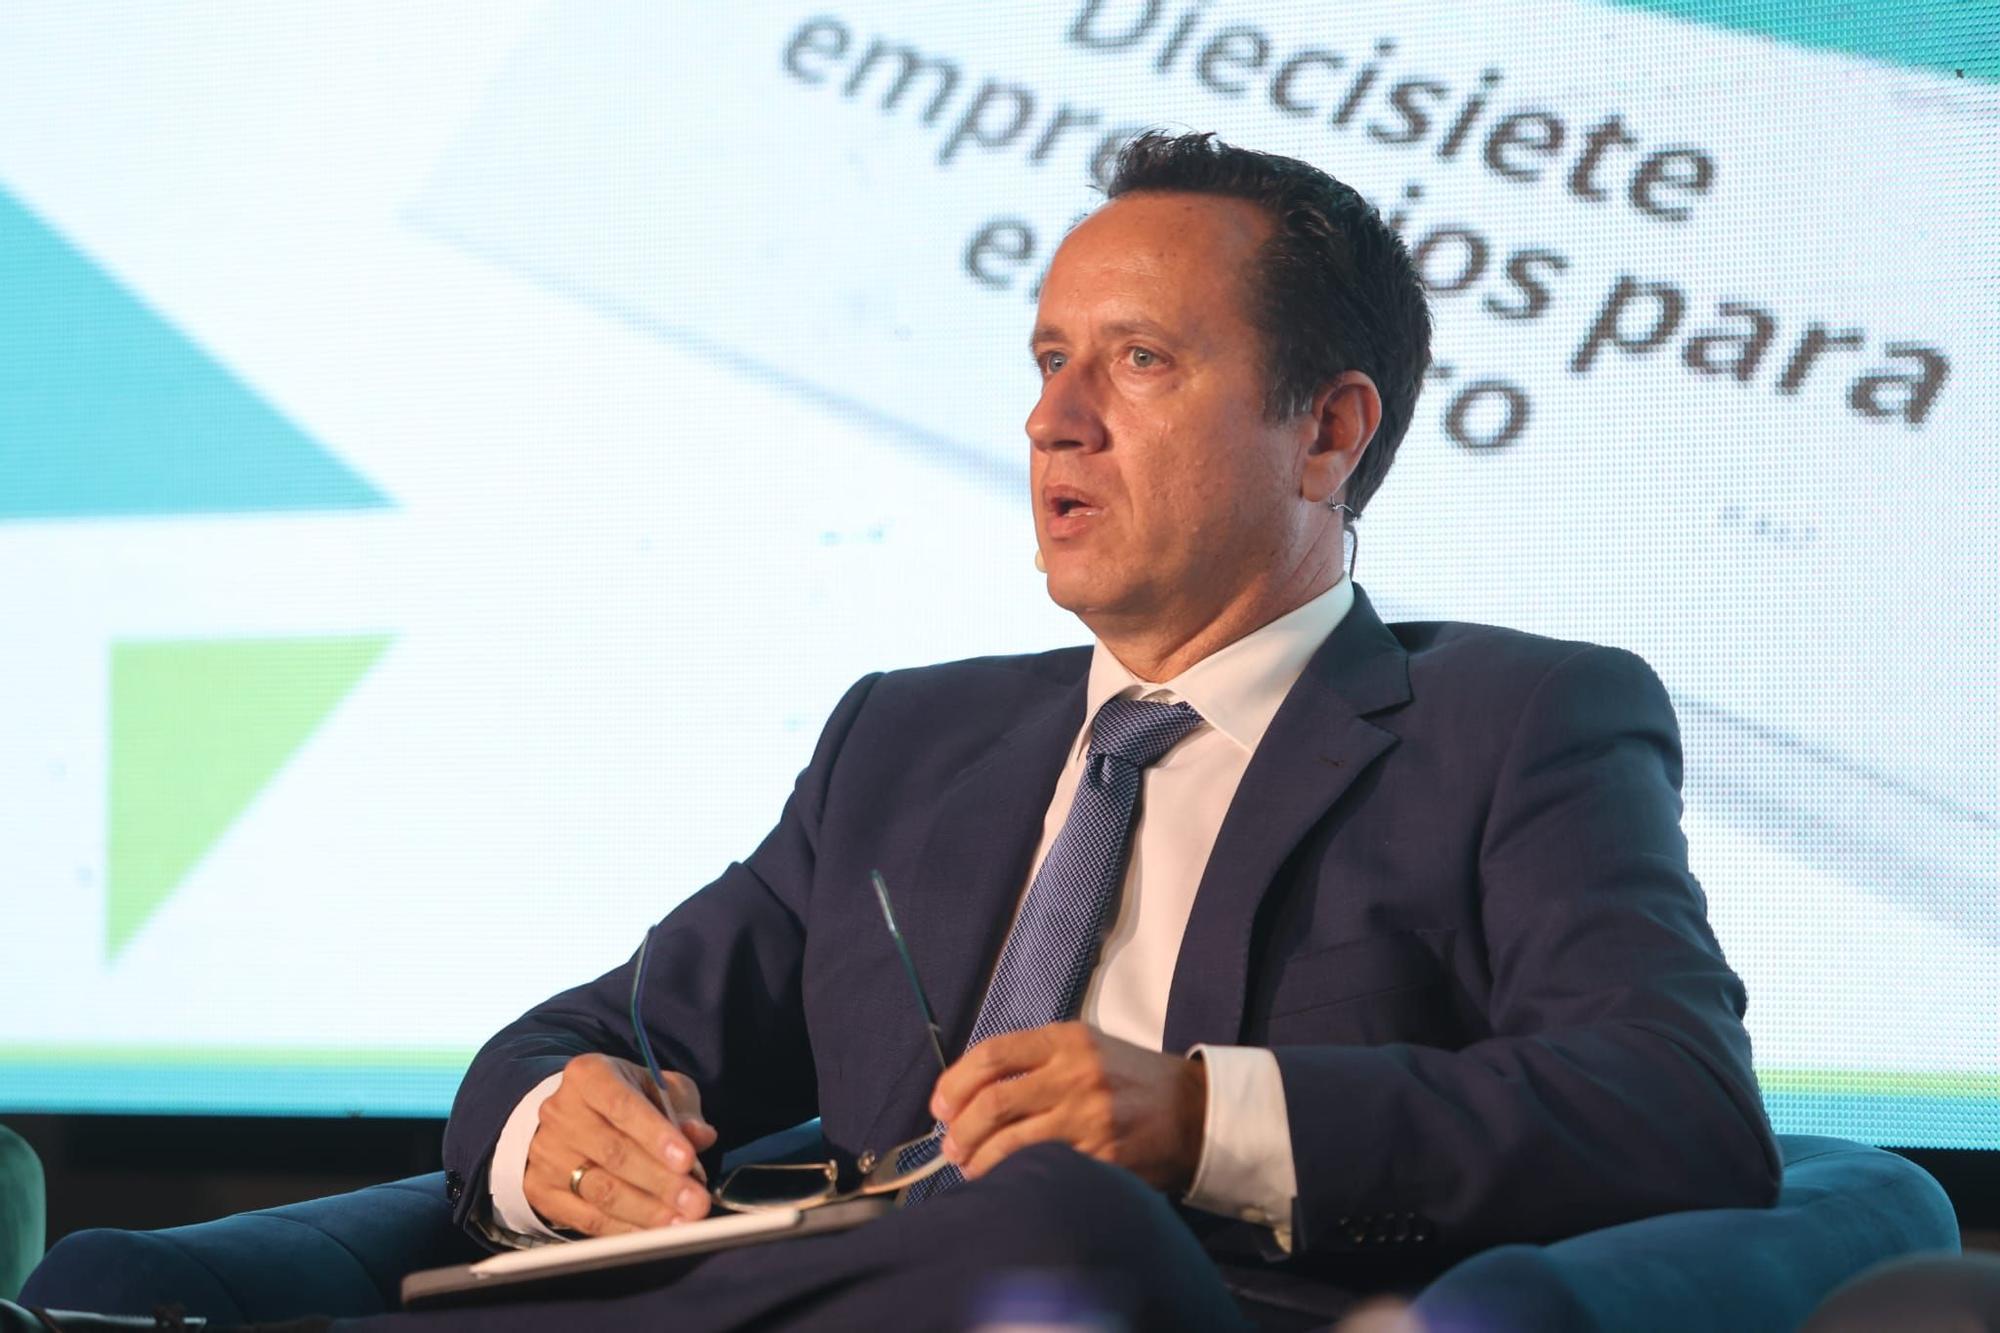 La presentación del suplemento económico 'activos' de Prensa Ibérica en València, en imágenes